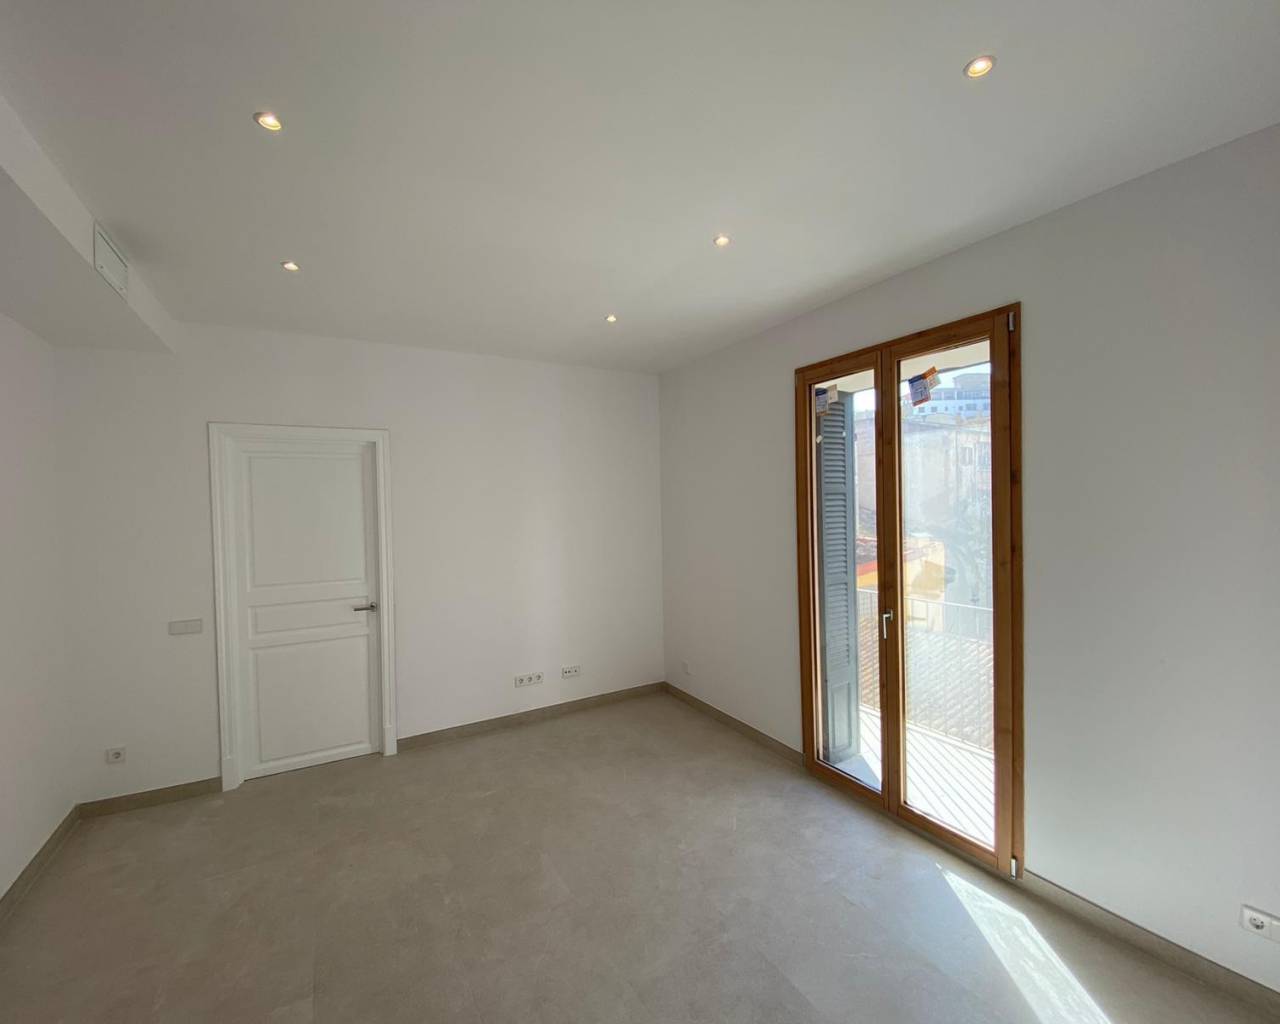 Flat in Palma De mallorca for Rent-estate agent in mallorca